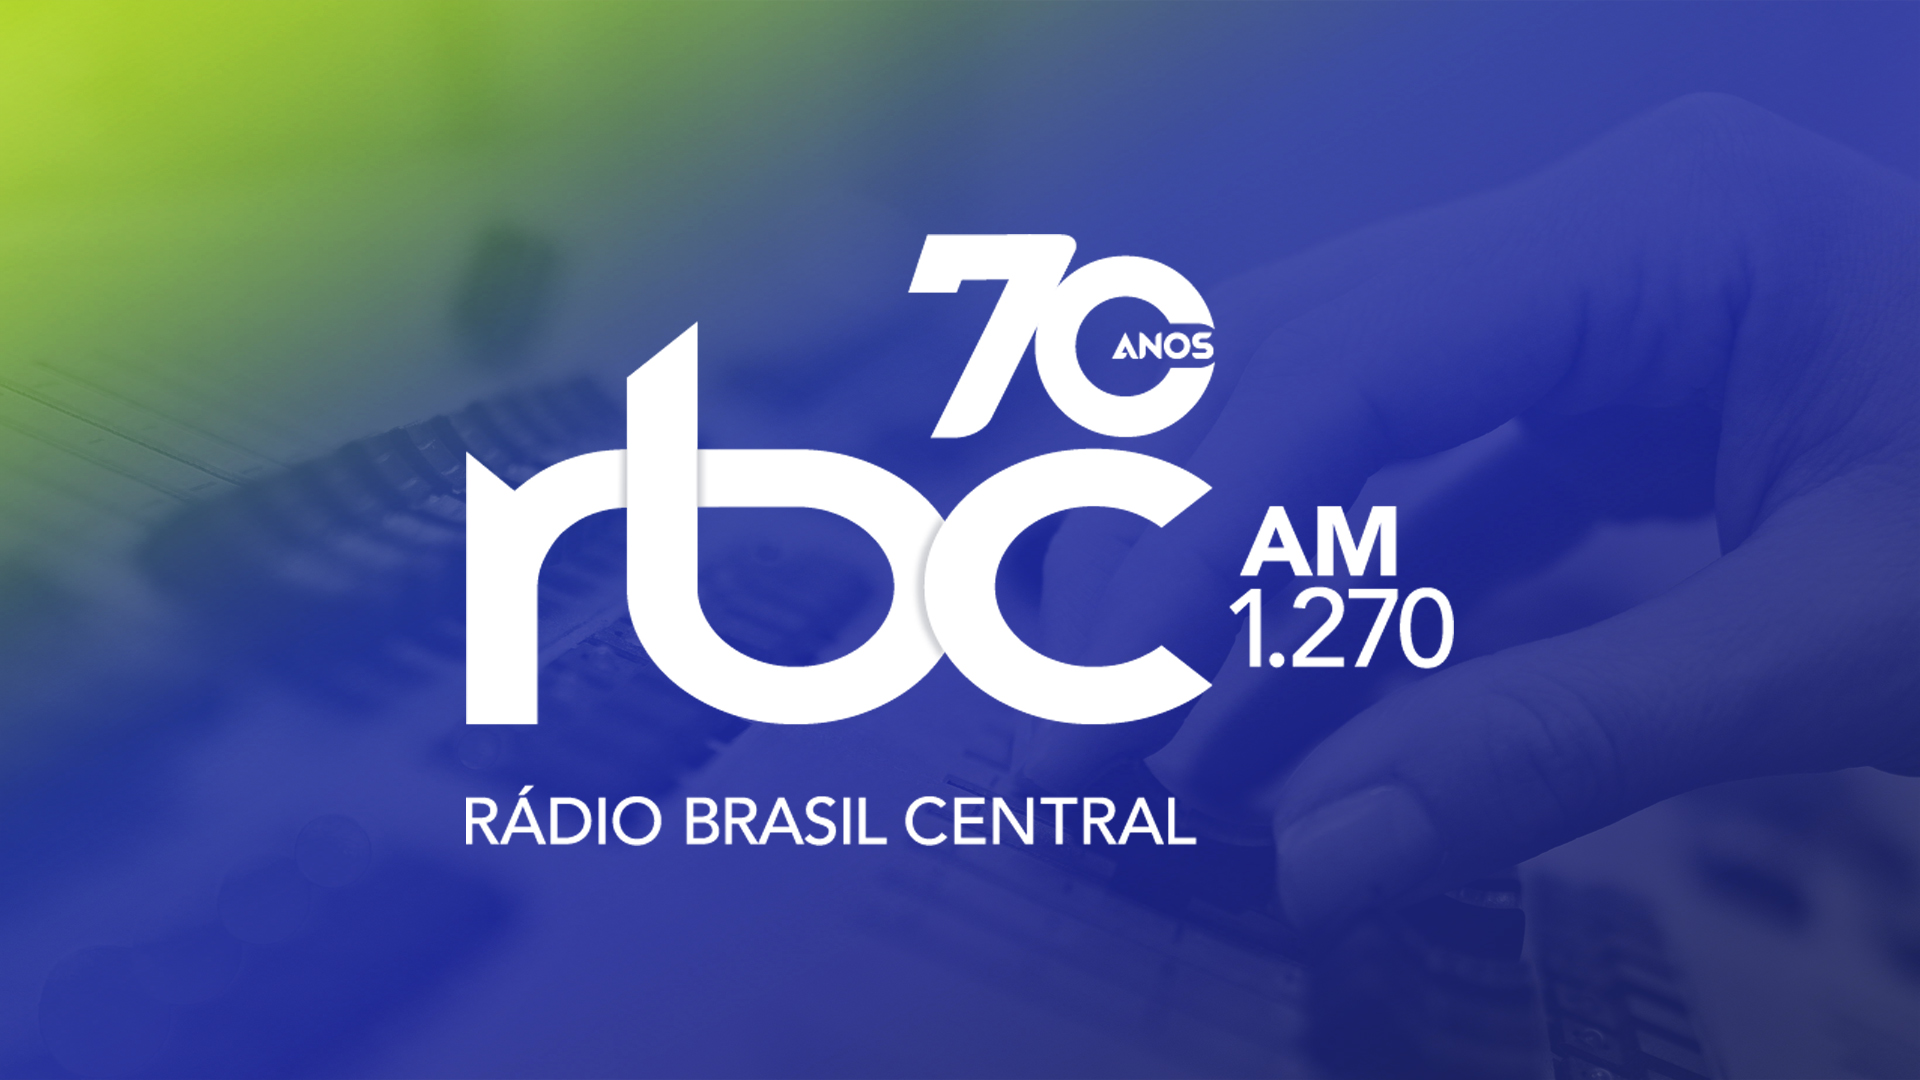 Imagem dos 70 anos da Ràdio Brasil Central